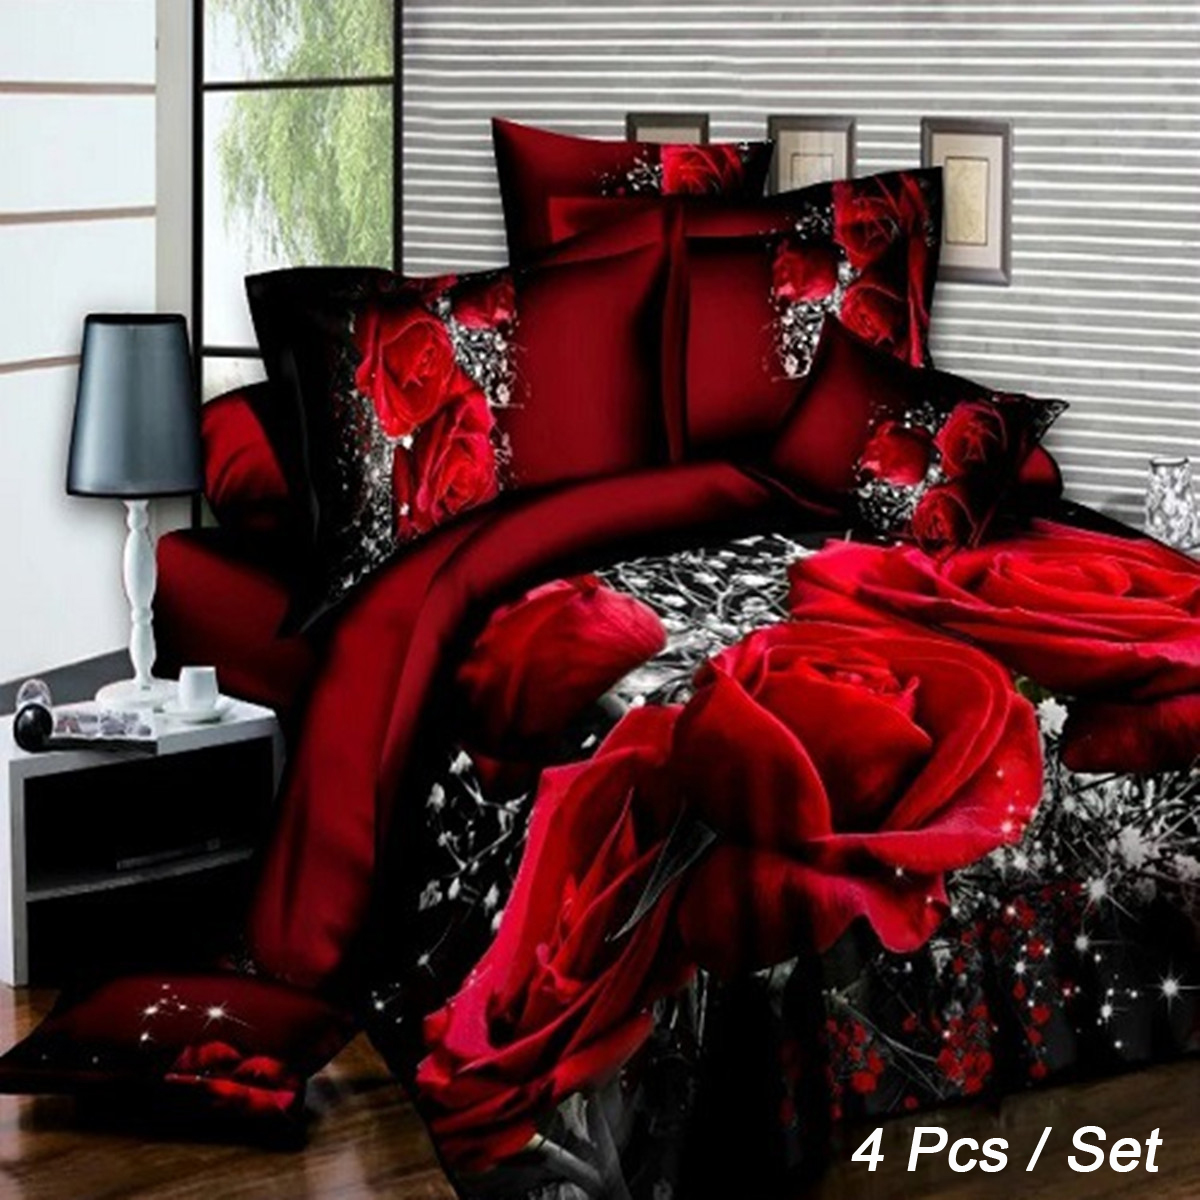 4-Pcs-3D-Images-Bedding-Sets-Duvet-Set-1-Quilt-Cover-1-Fitted-Sheet-2-Pillow-Cases-1353508-1